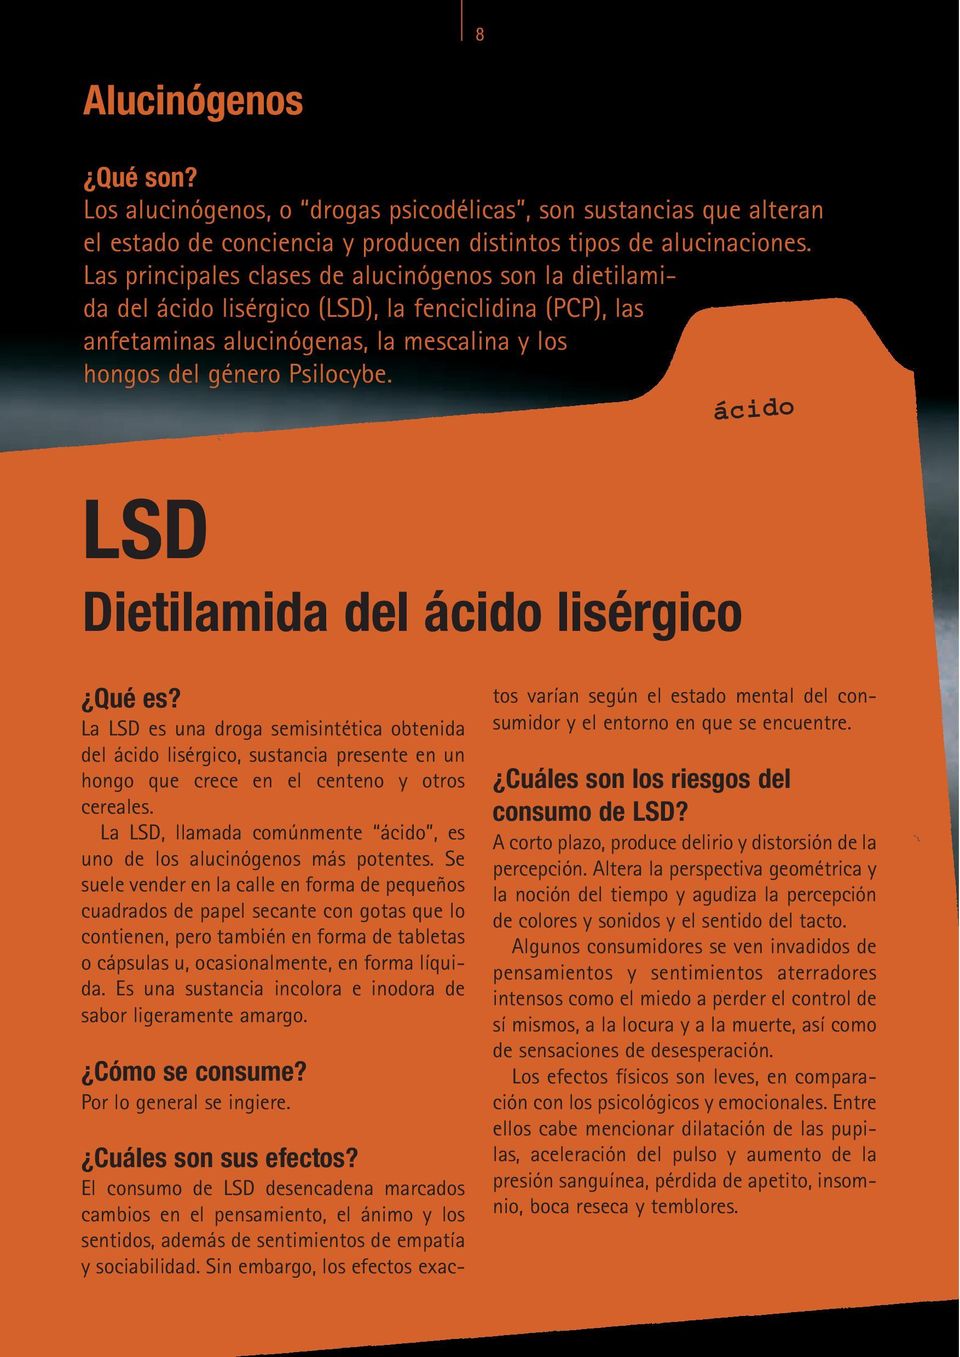 ácido LSD Dietilamida del ácido lisérgico La LSD es una droga semisintética obtenida del ácido lisérgico, sustancia presente en un hongo que crece en el centeno y otros cereales.